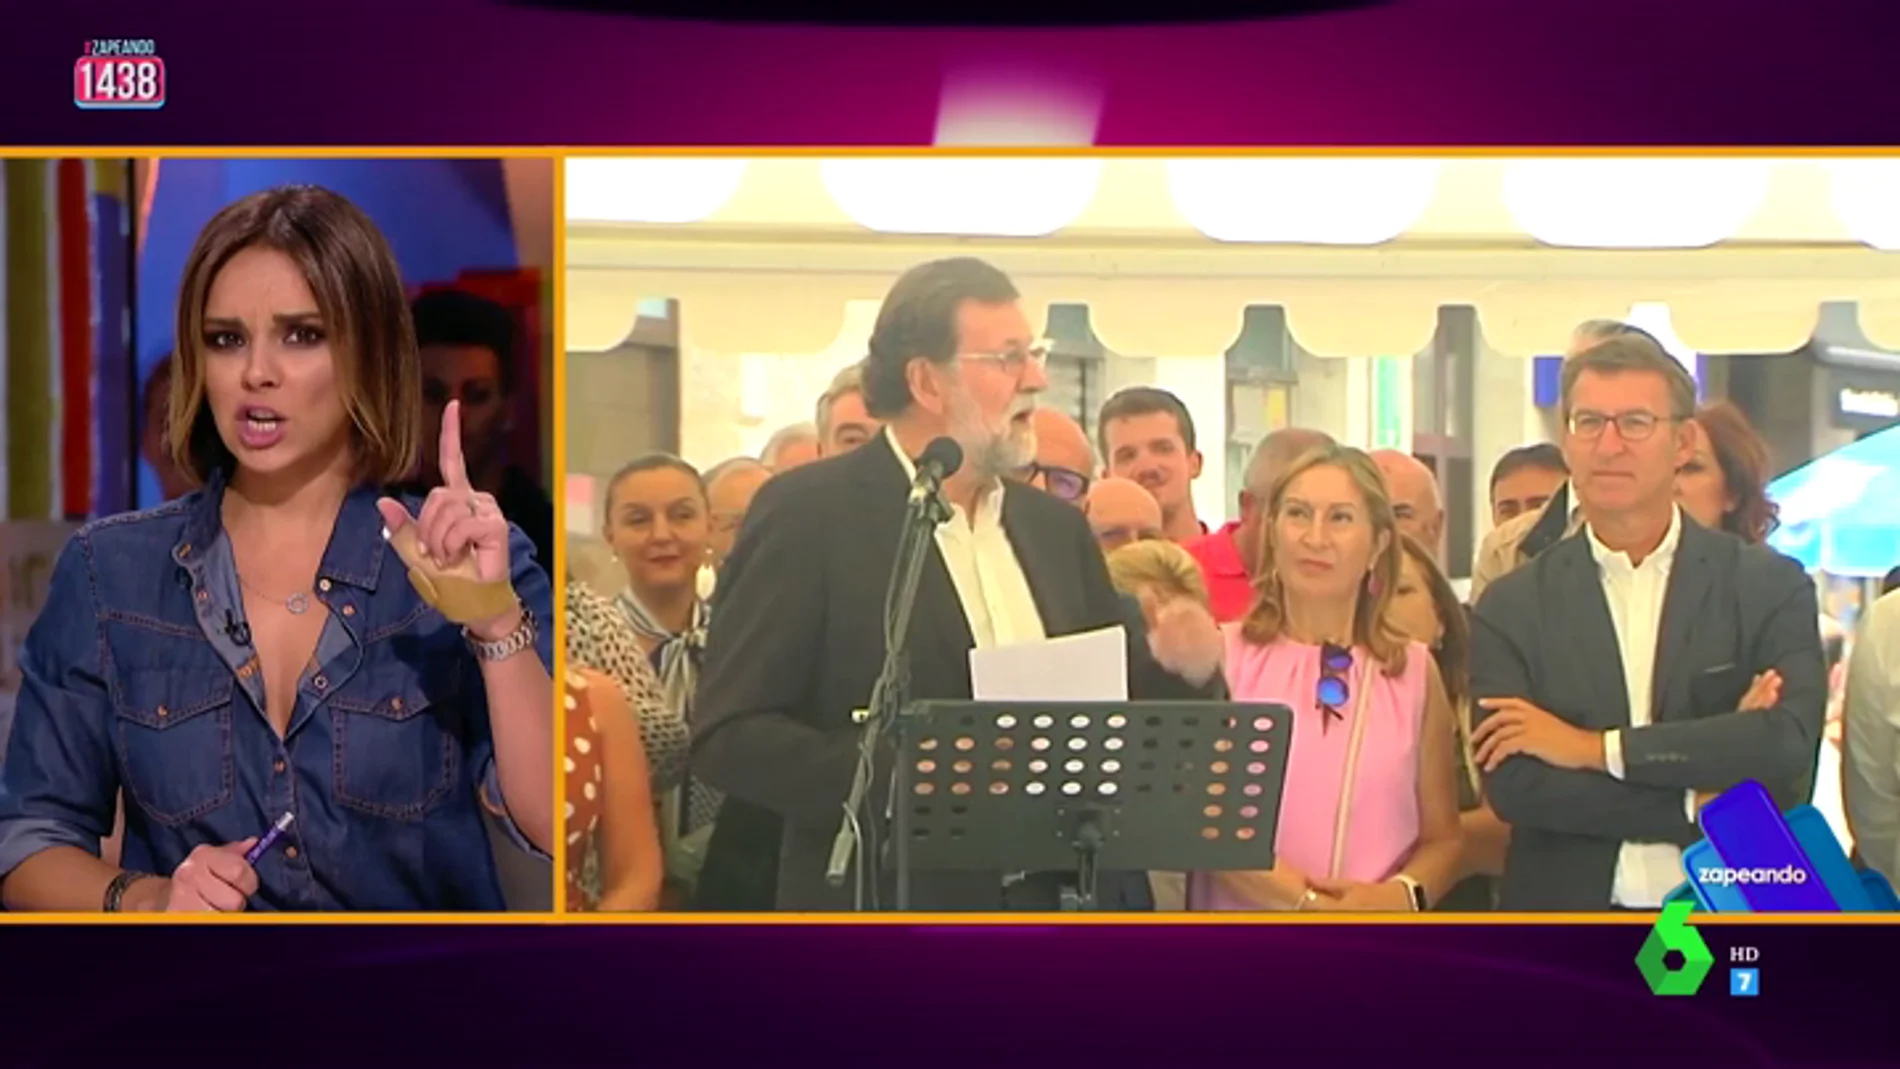 La imitación de Chenoa a Mariano Rajoy: "Los intelectuales se han metido conmigo por decir 'viva el vino'"